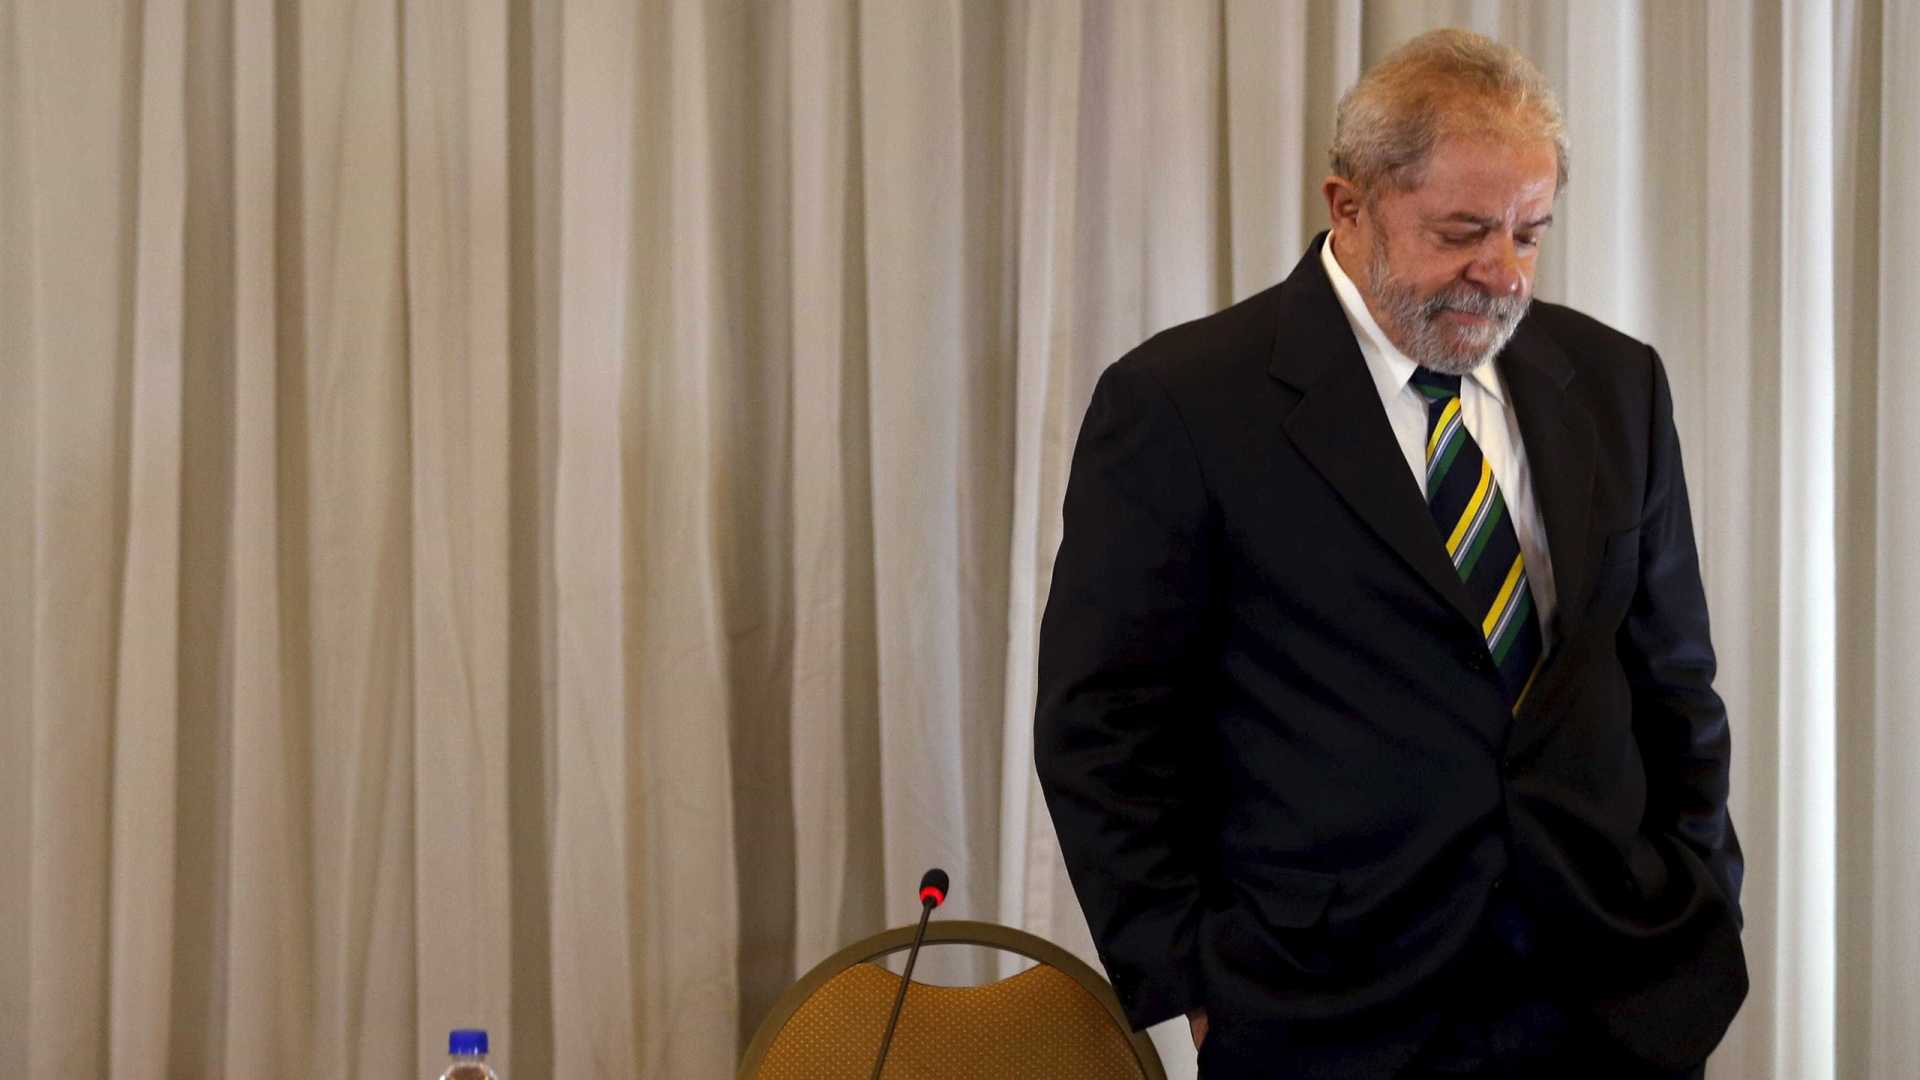 Para PT, prioridade é financiar campanha de Lula e reeleições